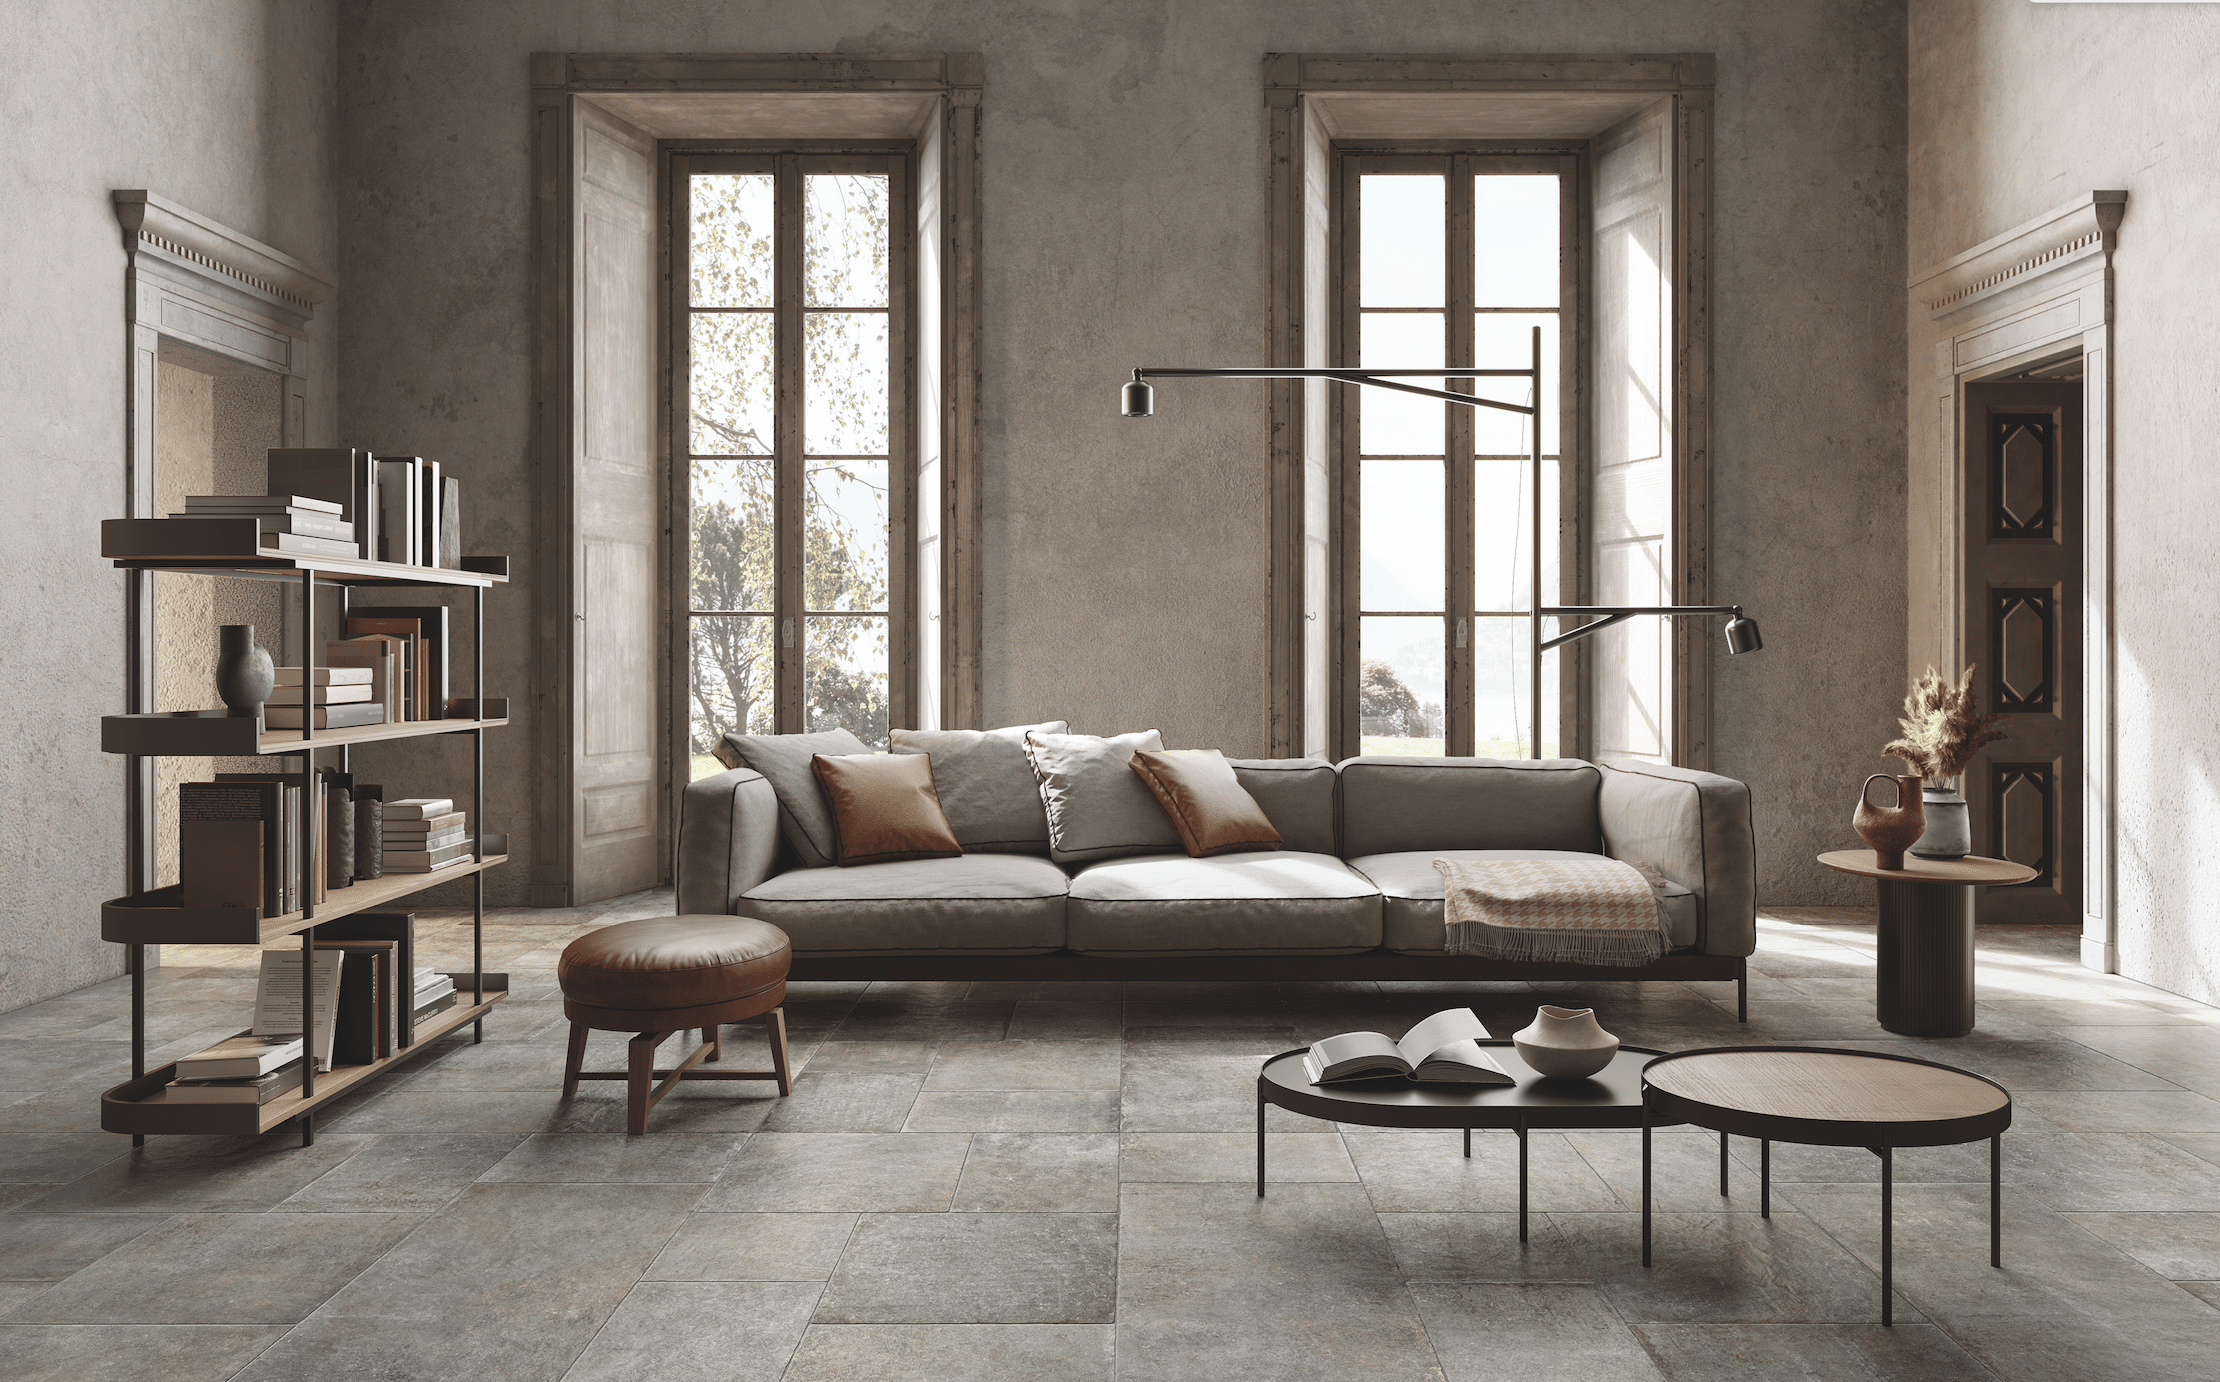 Fliesendorf zeigt ein Wohnzimmer mit grau gefliestem Boden, einer grauen, gepolsterten Couch mit braunem Lederhocker und zwei wandhohe Fenster mit Holzrahmen.